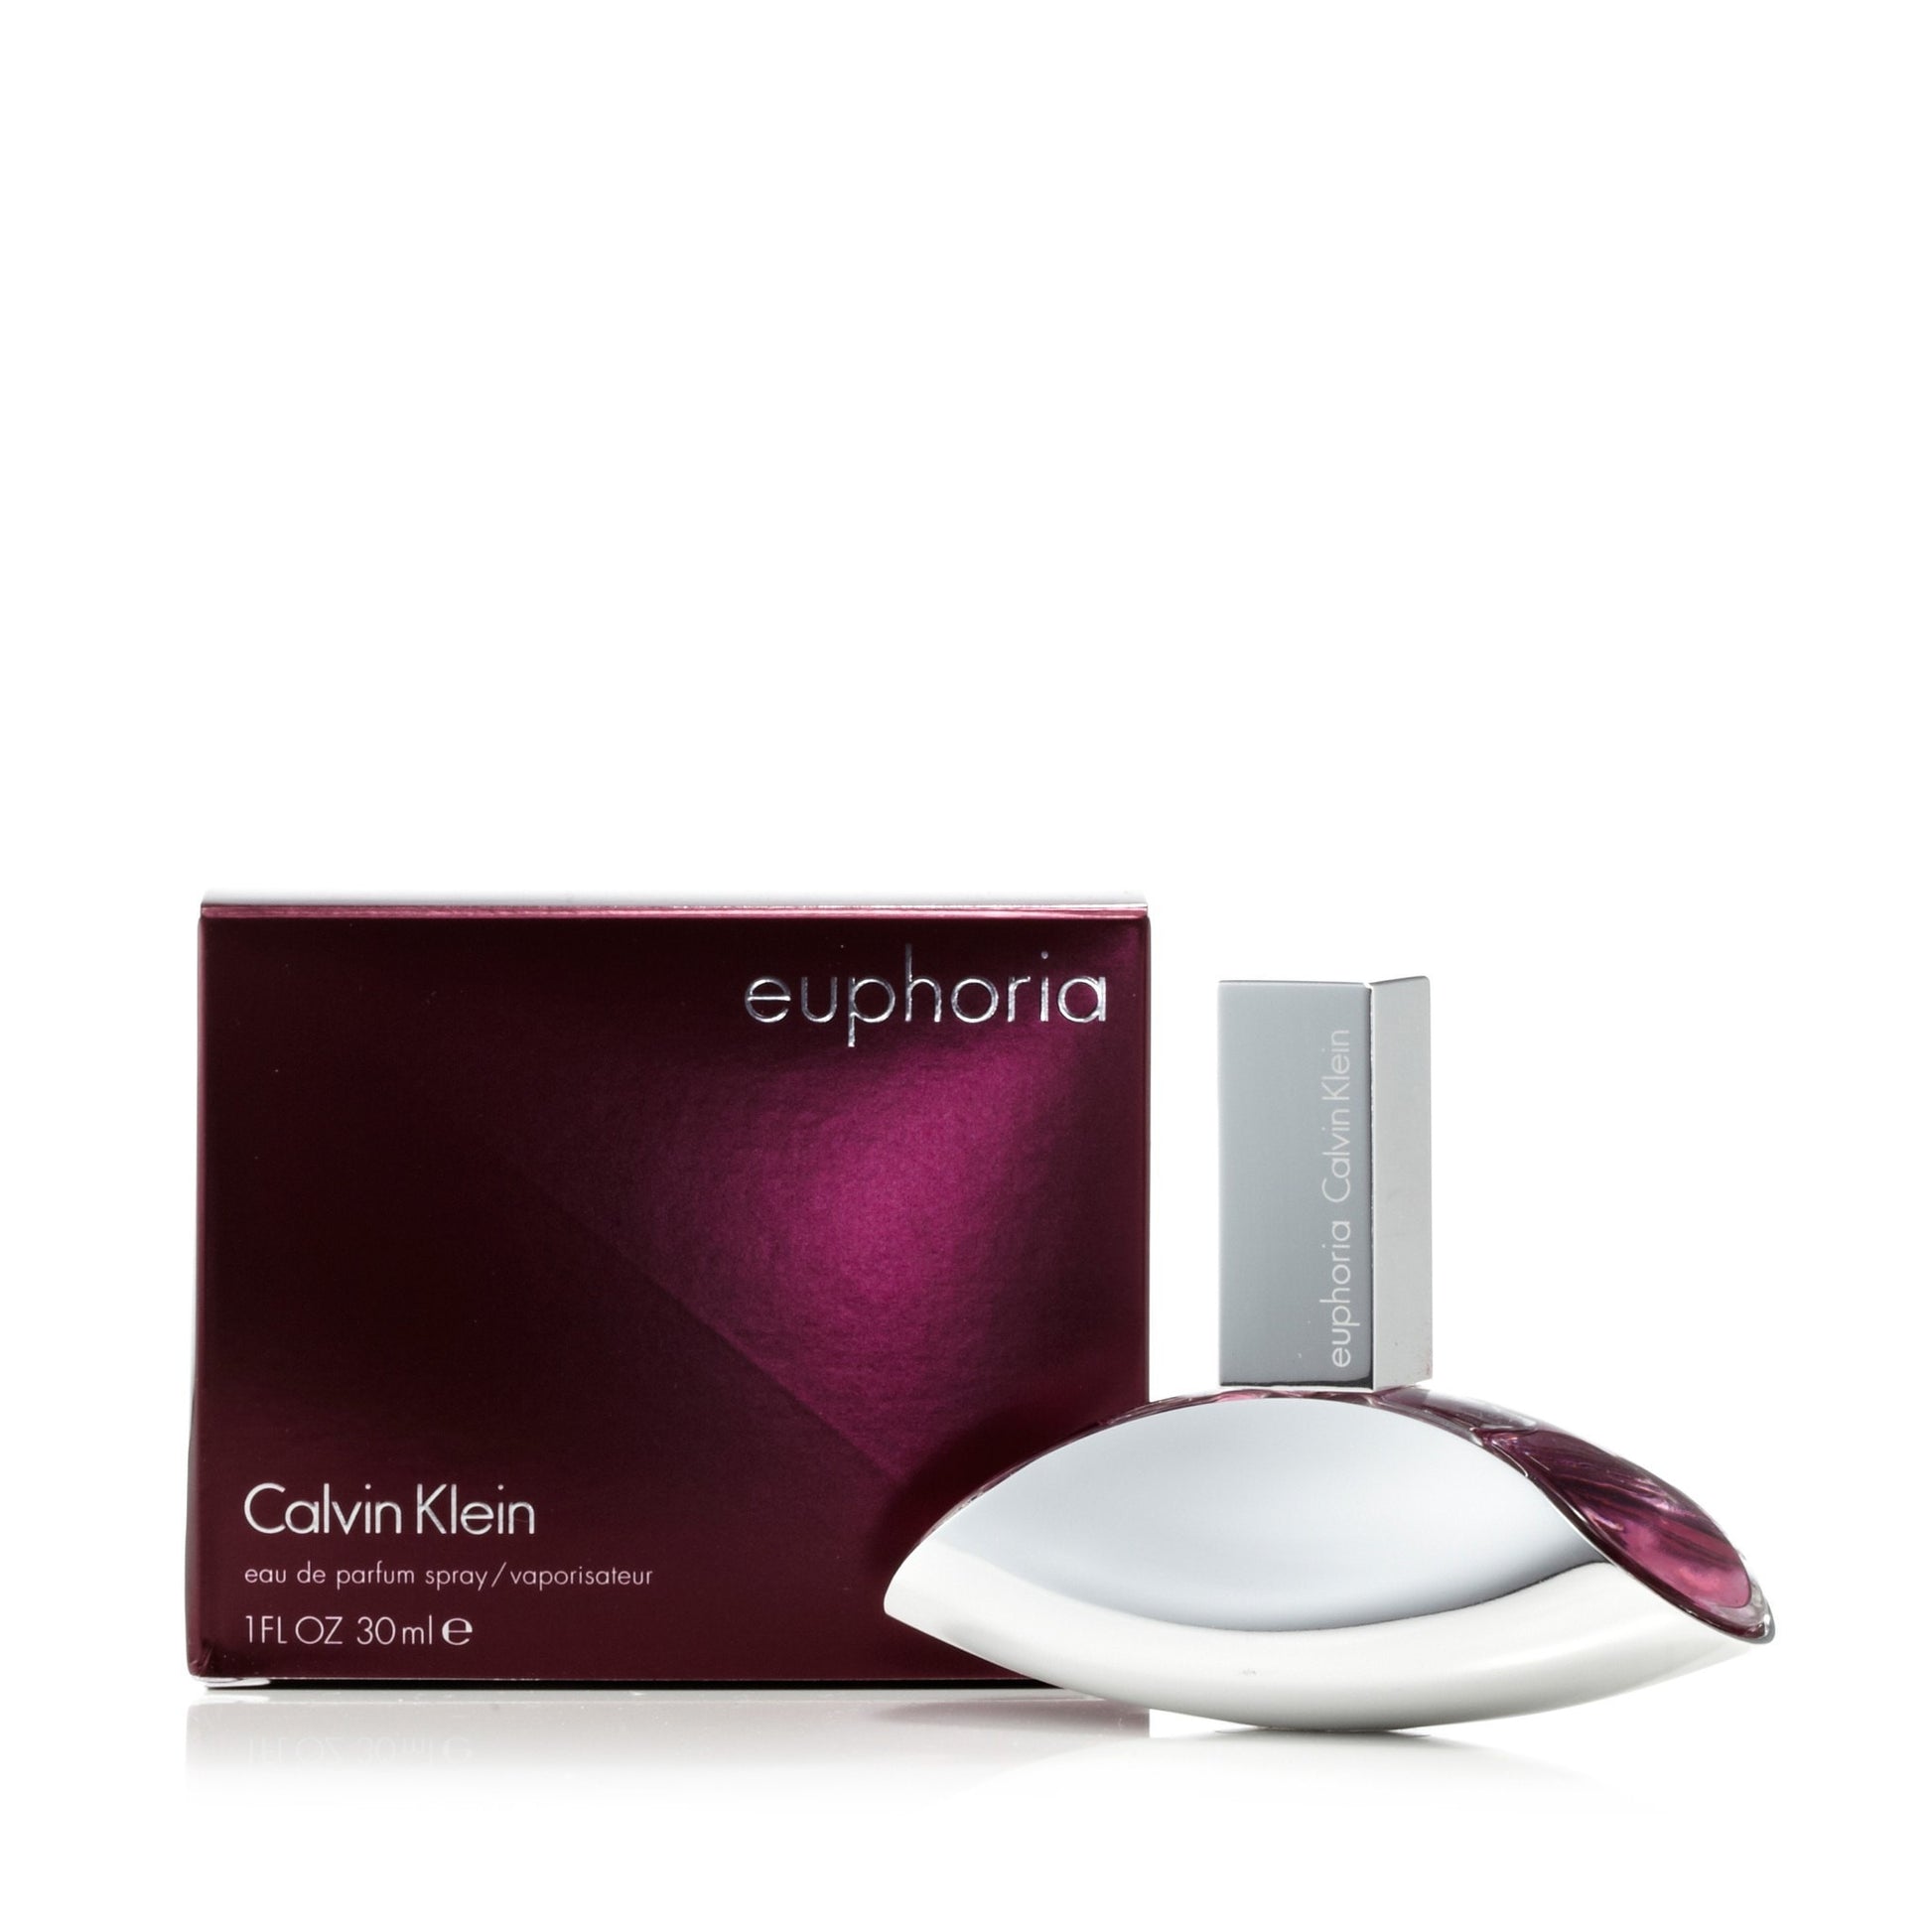 Euphoria Eau de Parfum Spray for Women by Calvin Klein 1.0 oz. Click to open in modal